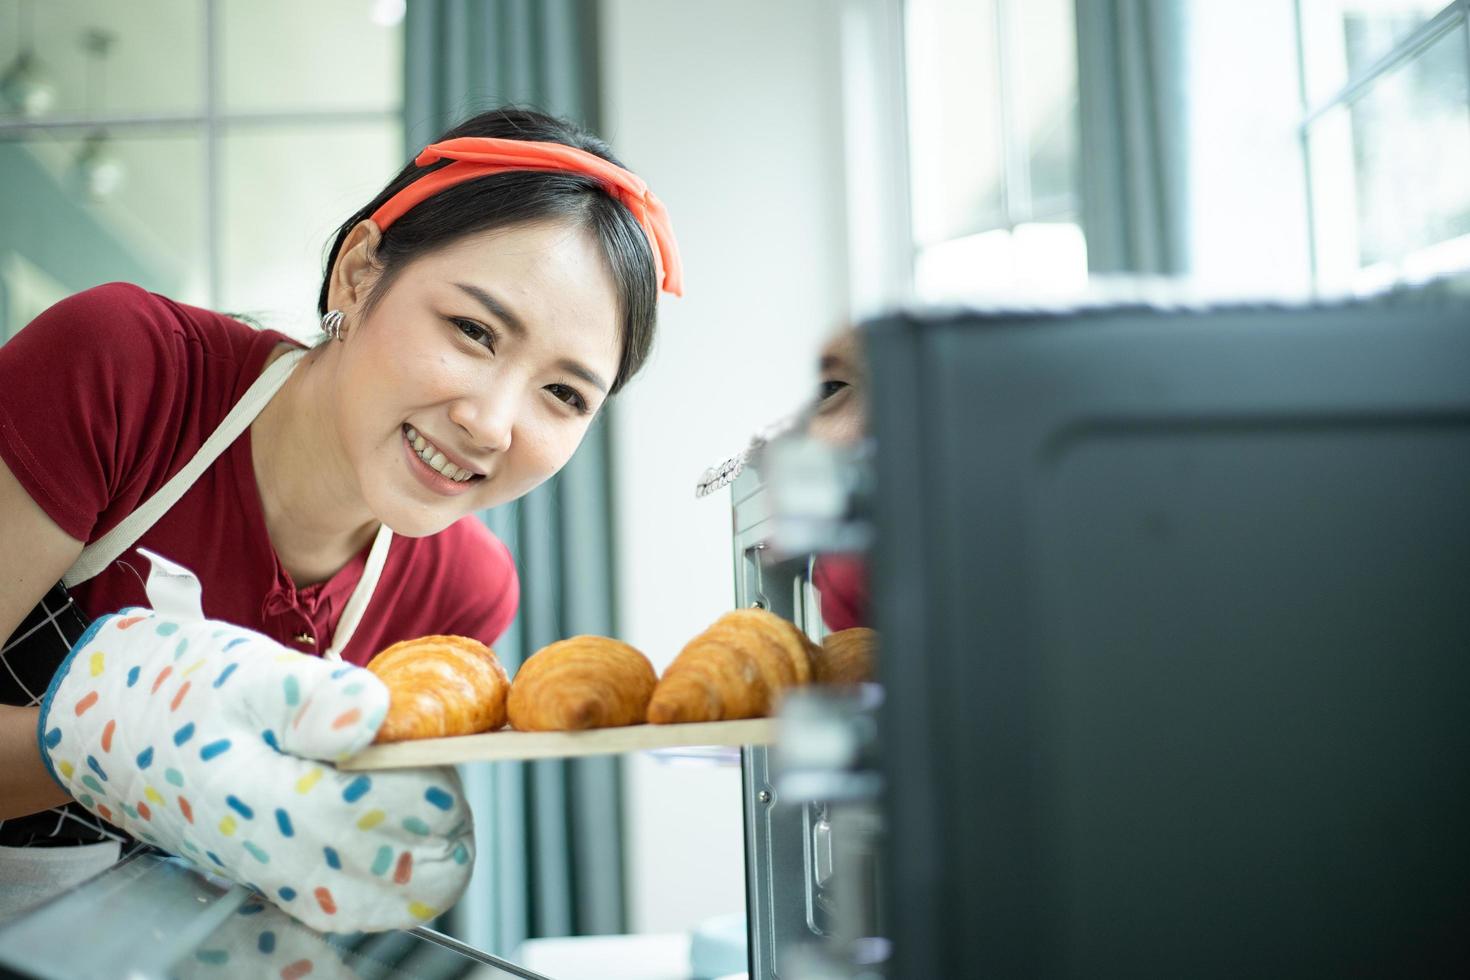 uma jovem feliz removendo a bandeja de croissants assados de um forno foto